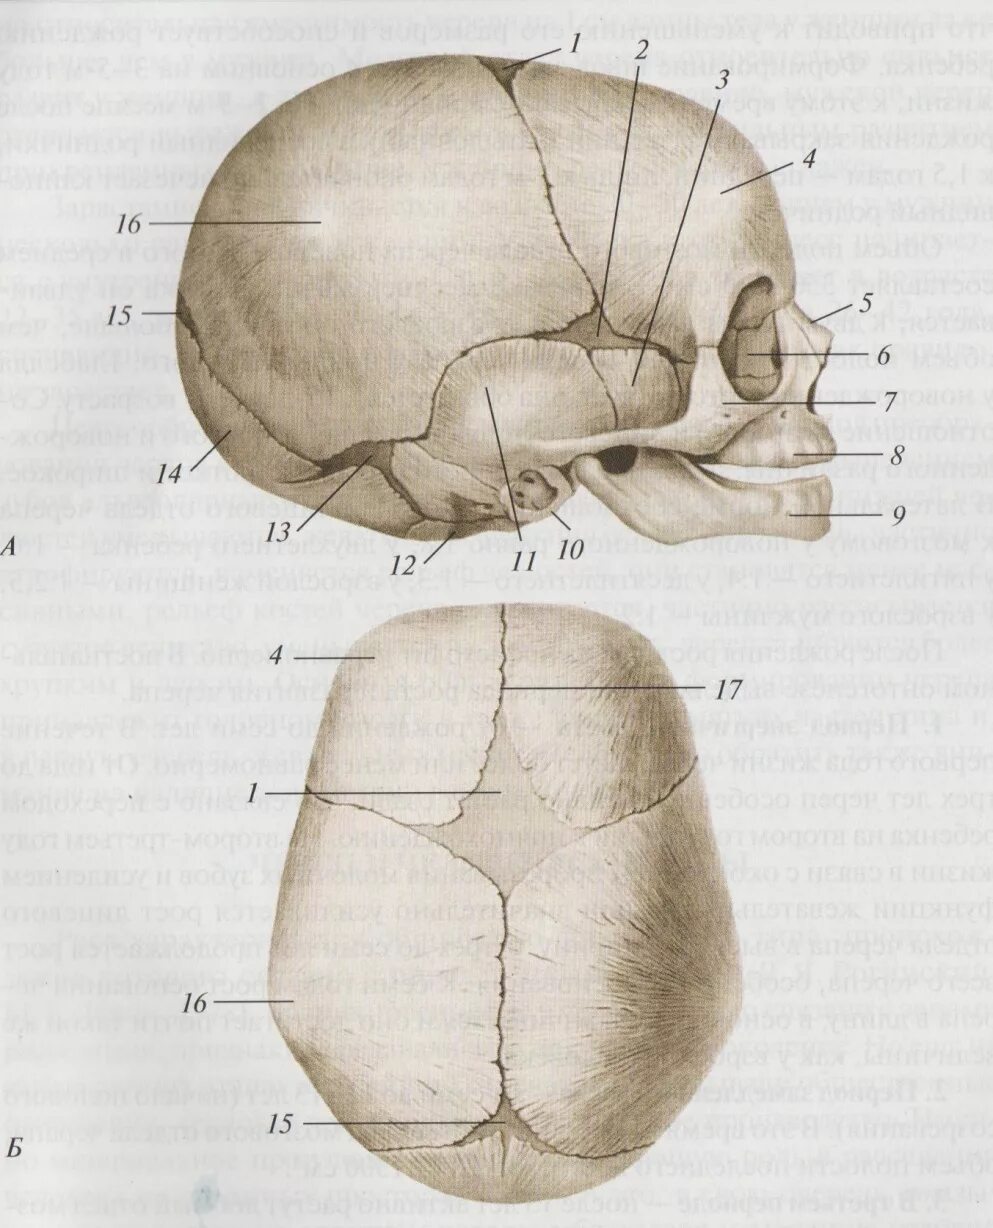 Швы и роднички. Роднички новорожденного анатомия черепа. Скелет головы швы черепа роднички. Череп человека сбоку Родничок. Роднички у новорожденных анатомия.